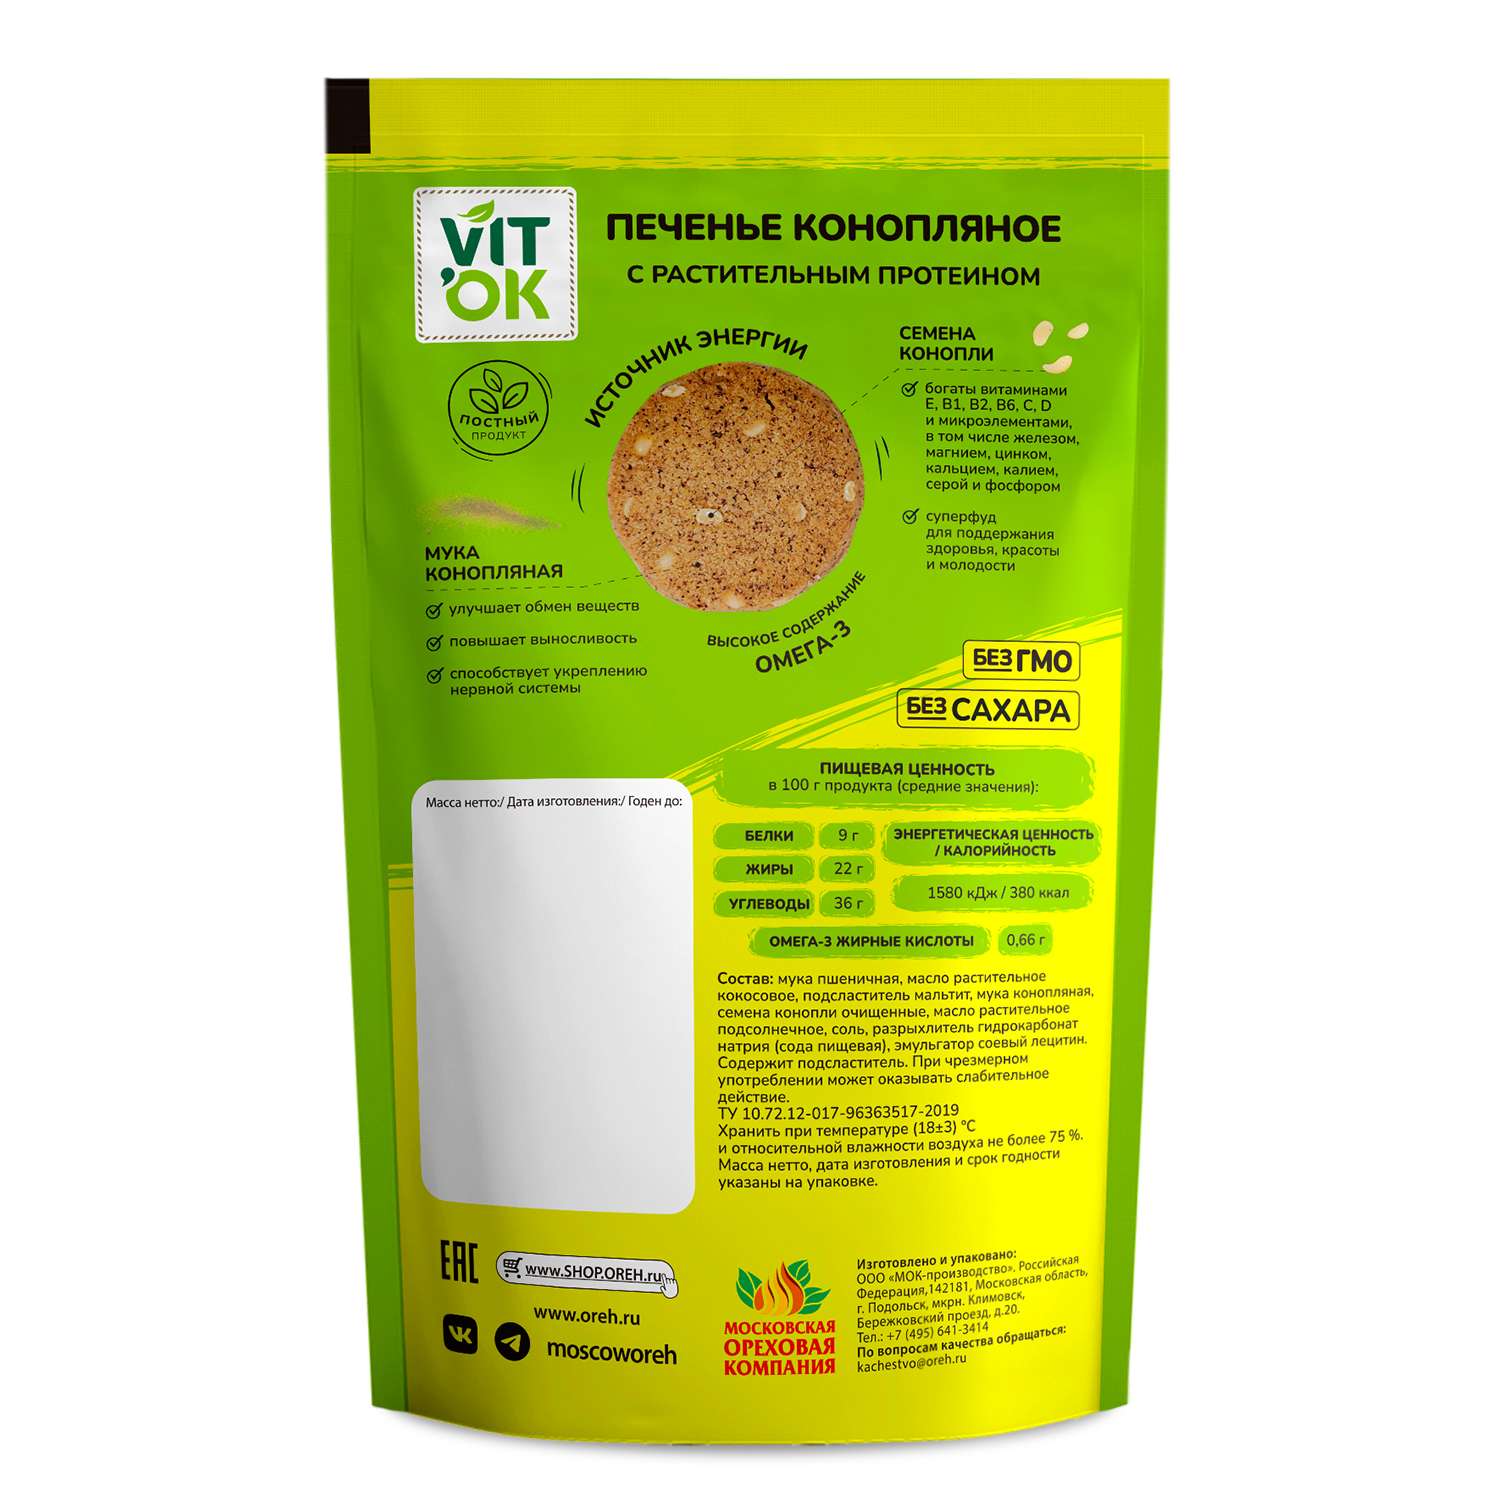 Печенье VITok полезное натуральное без сахара с семенами конопли 8 шт. по 100 г - фото 2